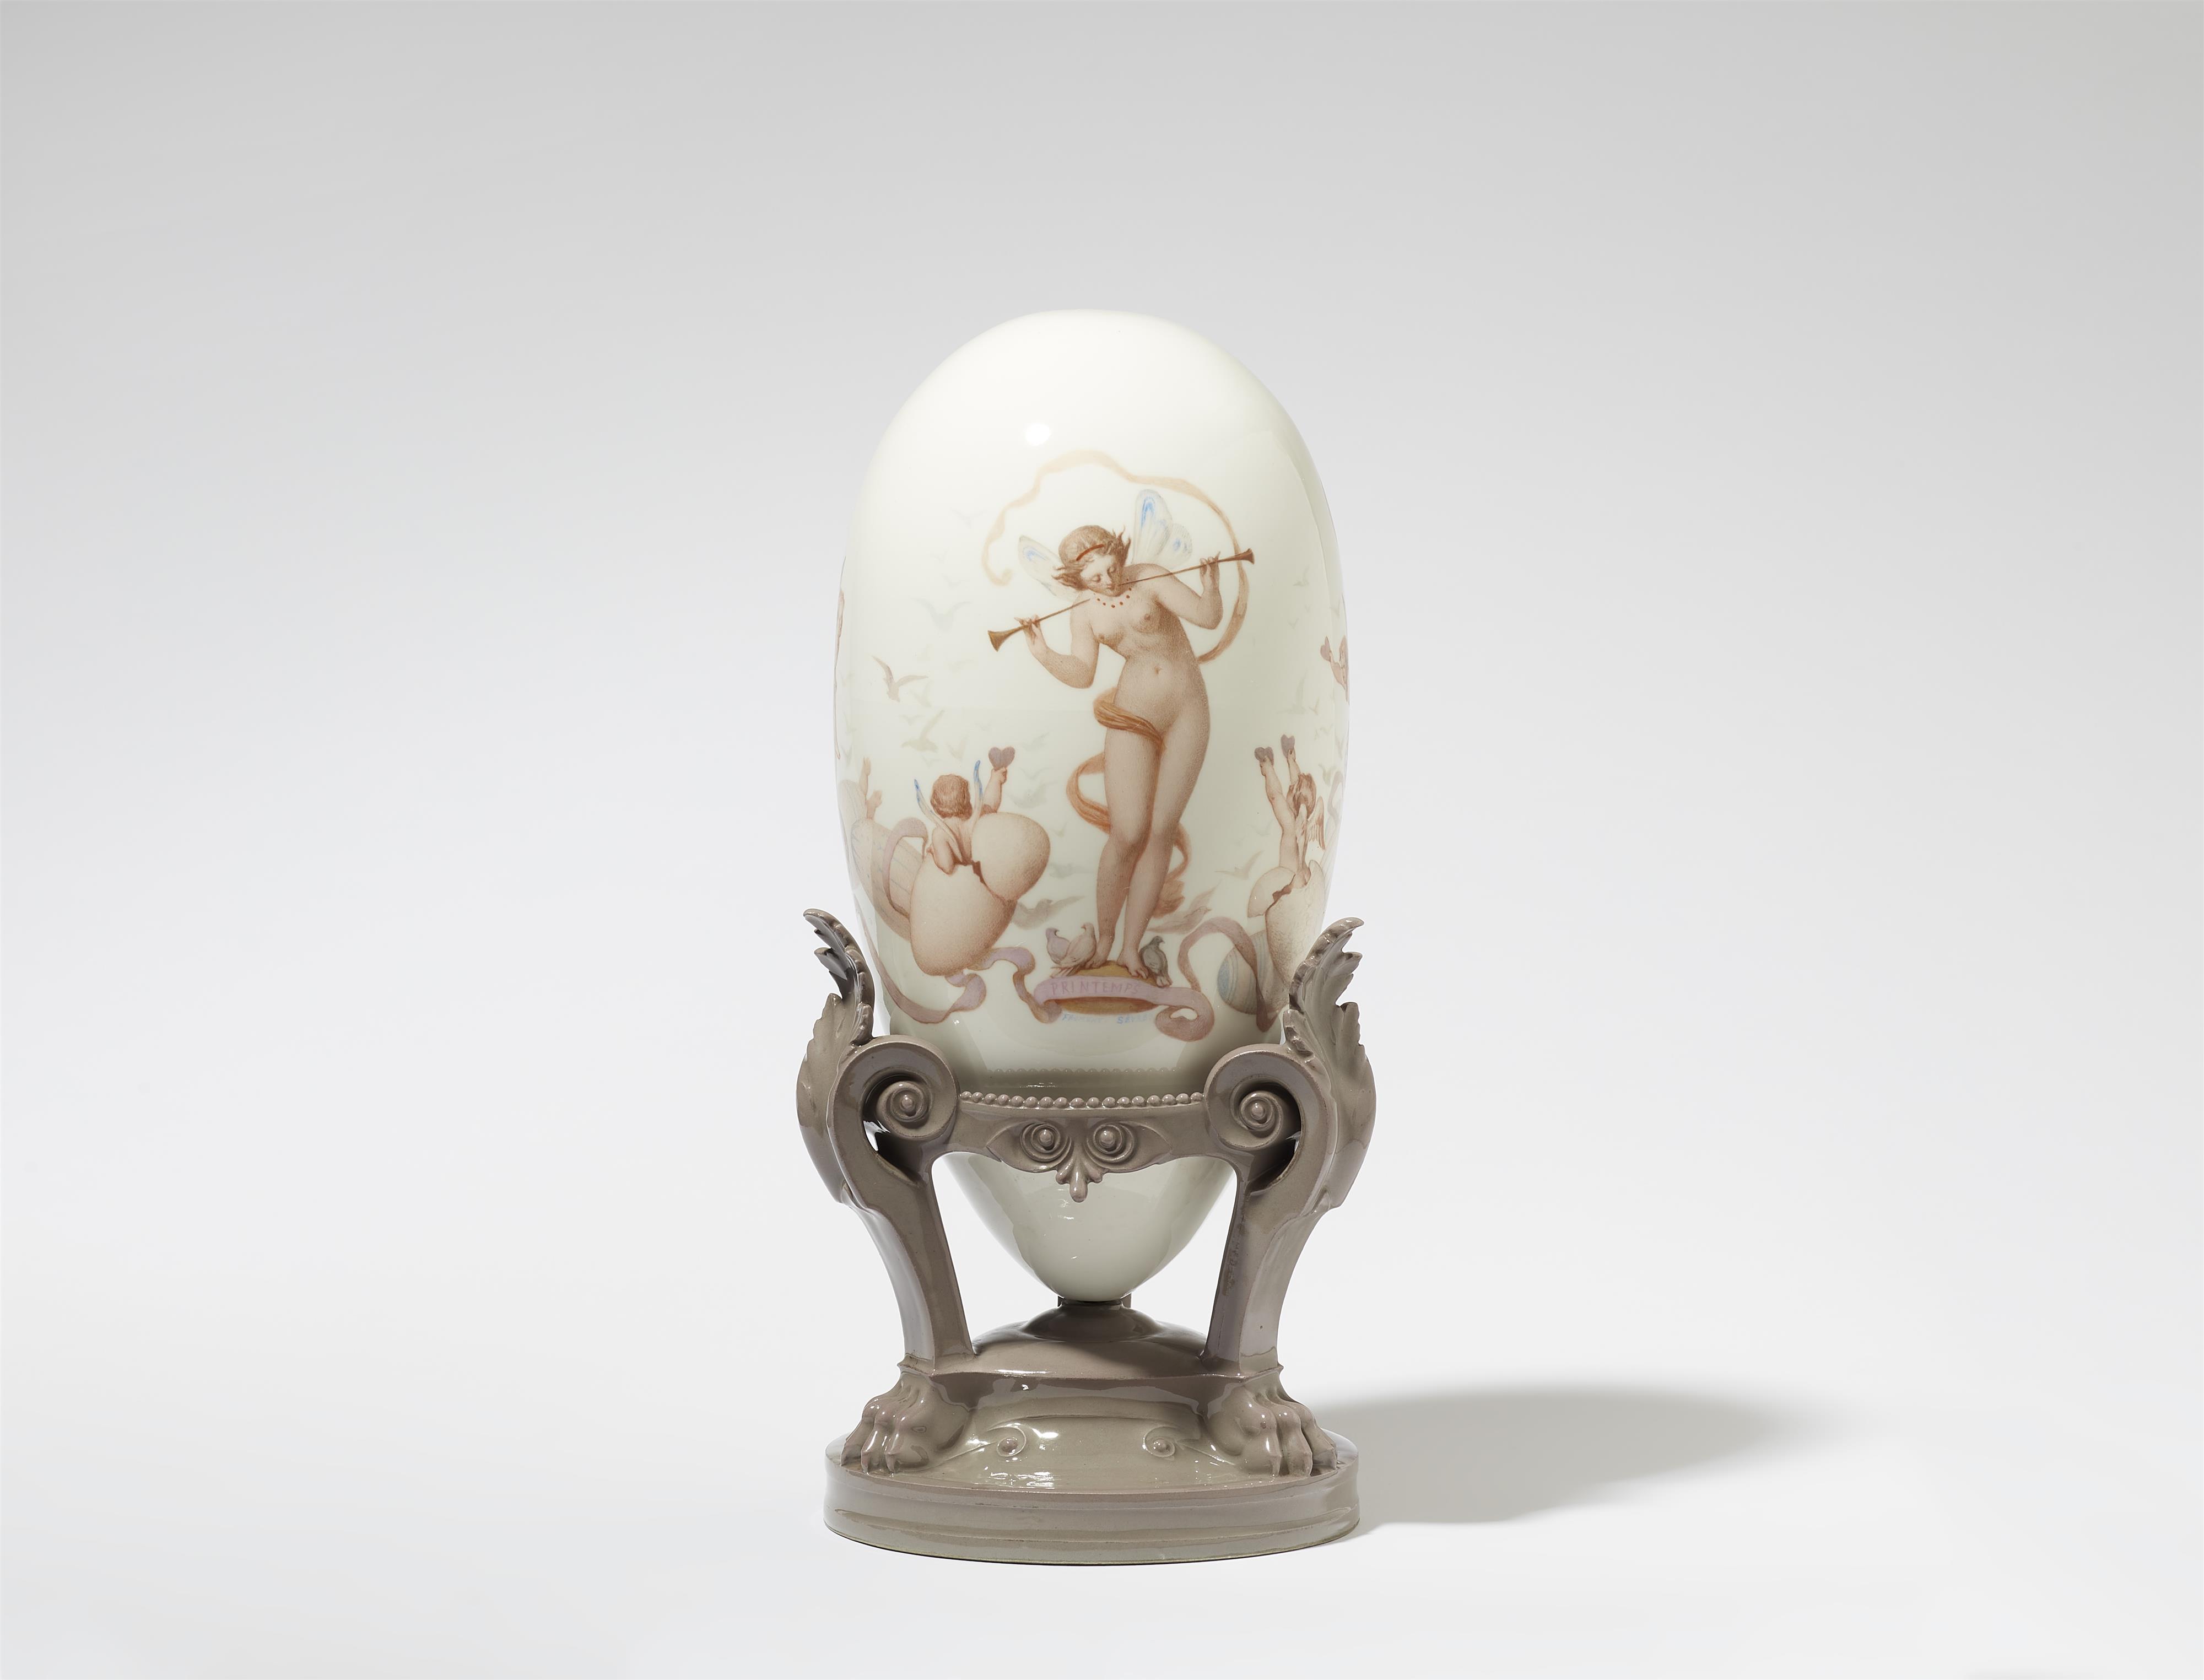 A decorative Sèvres porcelain egg, "Printemps" - image-1